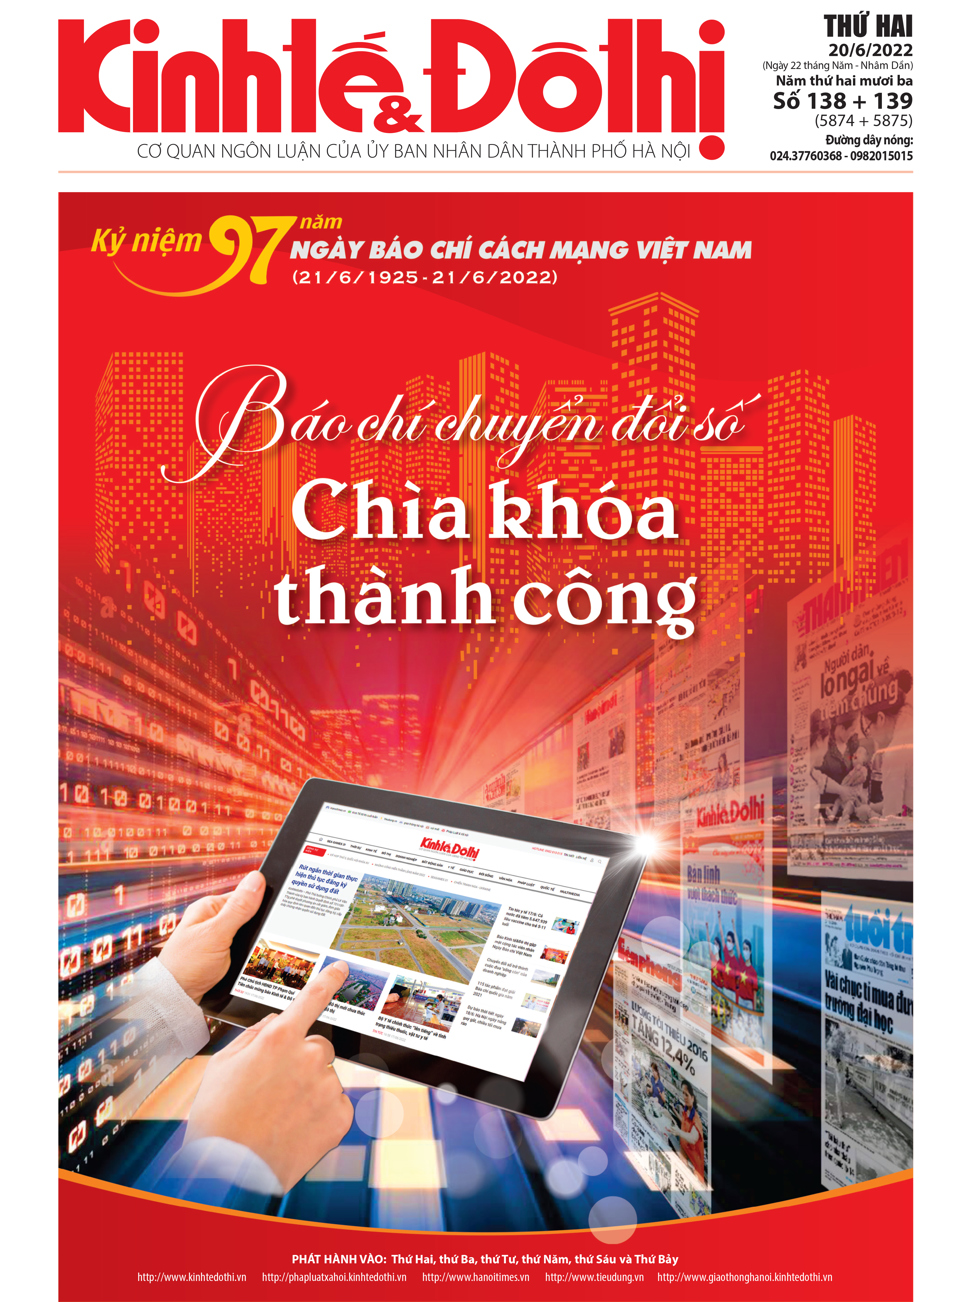 Trang nhất số báo đặc biệt Kỷ niệm 97 năm ngày Báo chí Cách mạng Việt Nam (21/6/1925 - 21/6/2022)